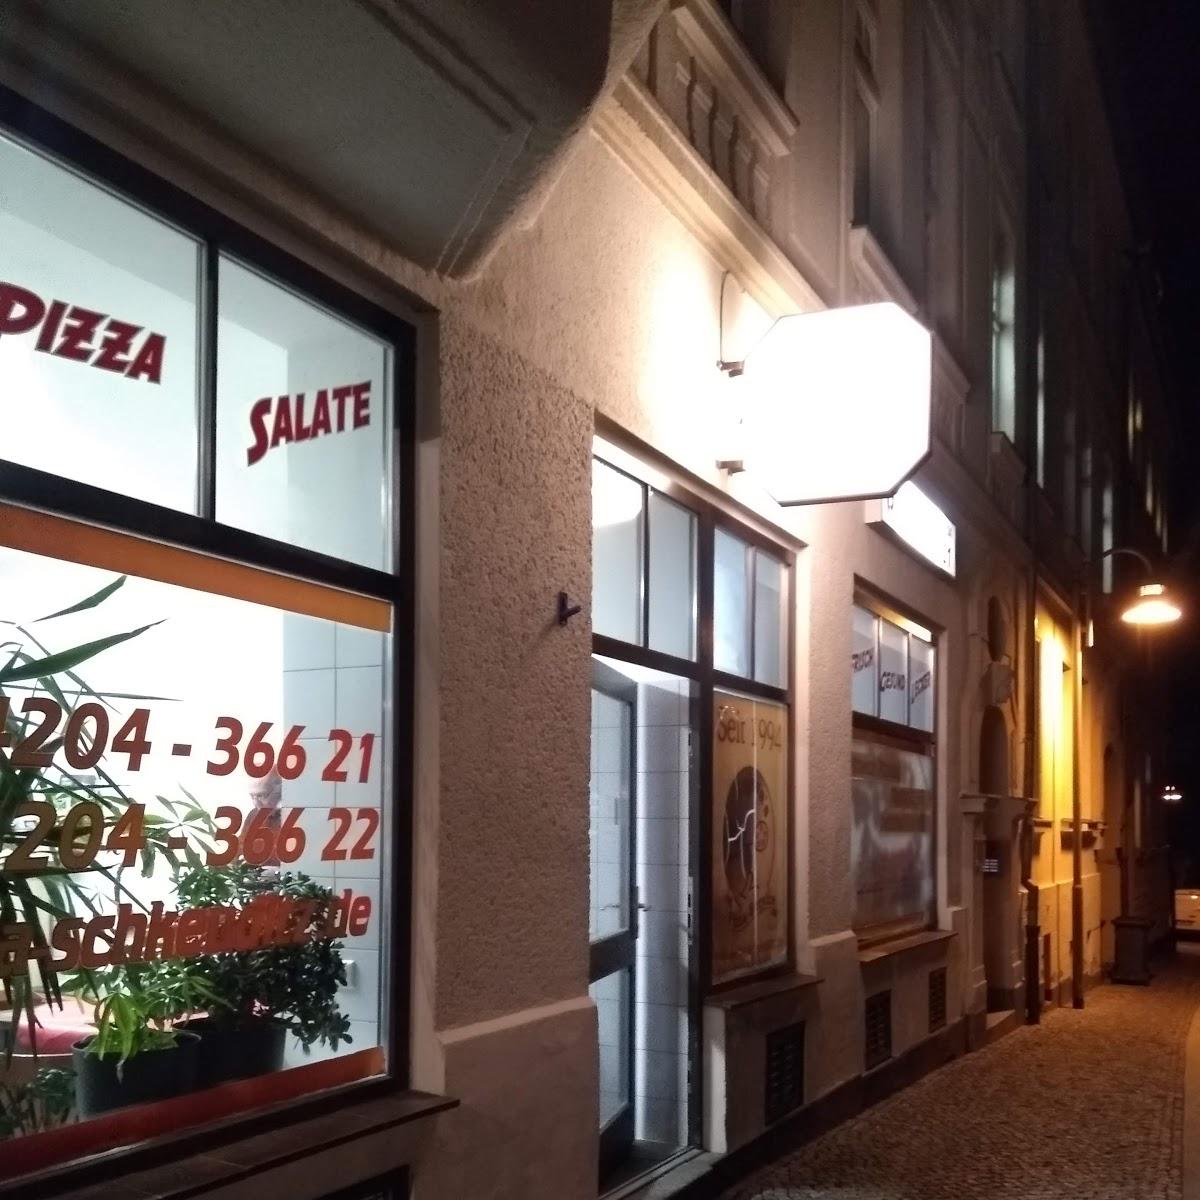 Restaurant "Bajwa’s Schkeuditz" in Schkeuditz